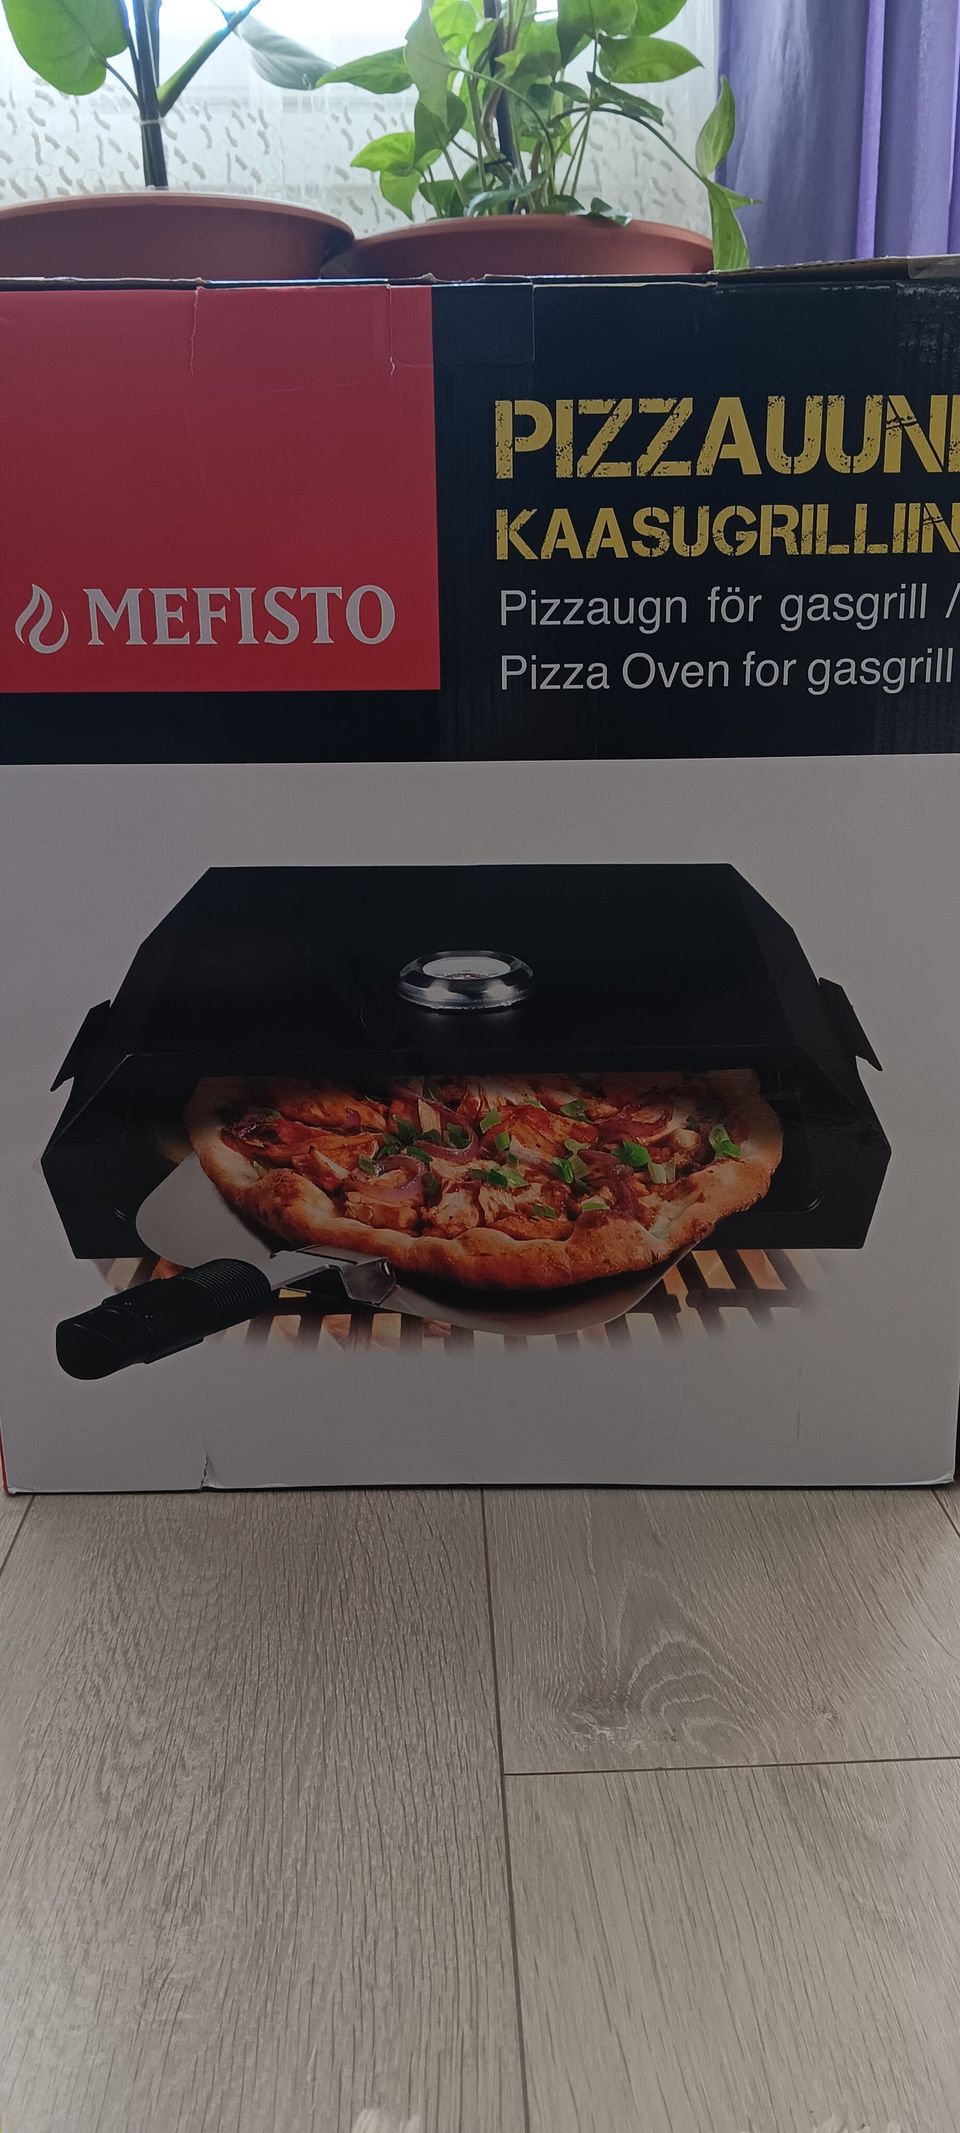 Mefisto merkinen pizzauuni